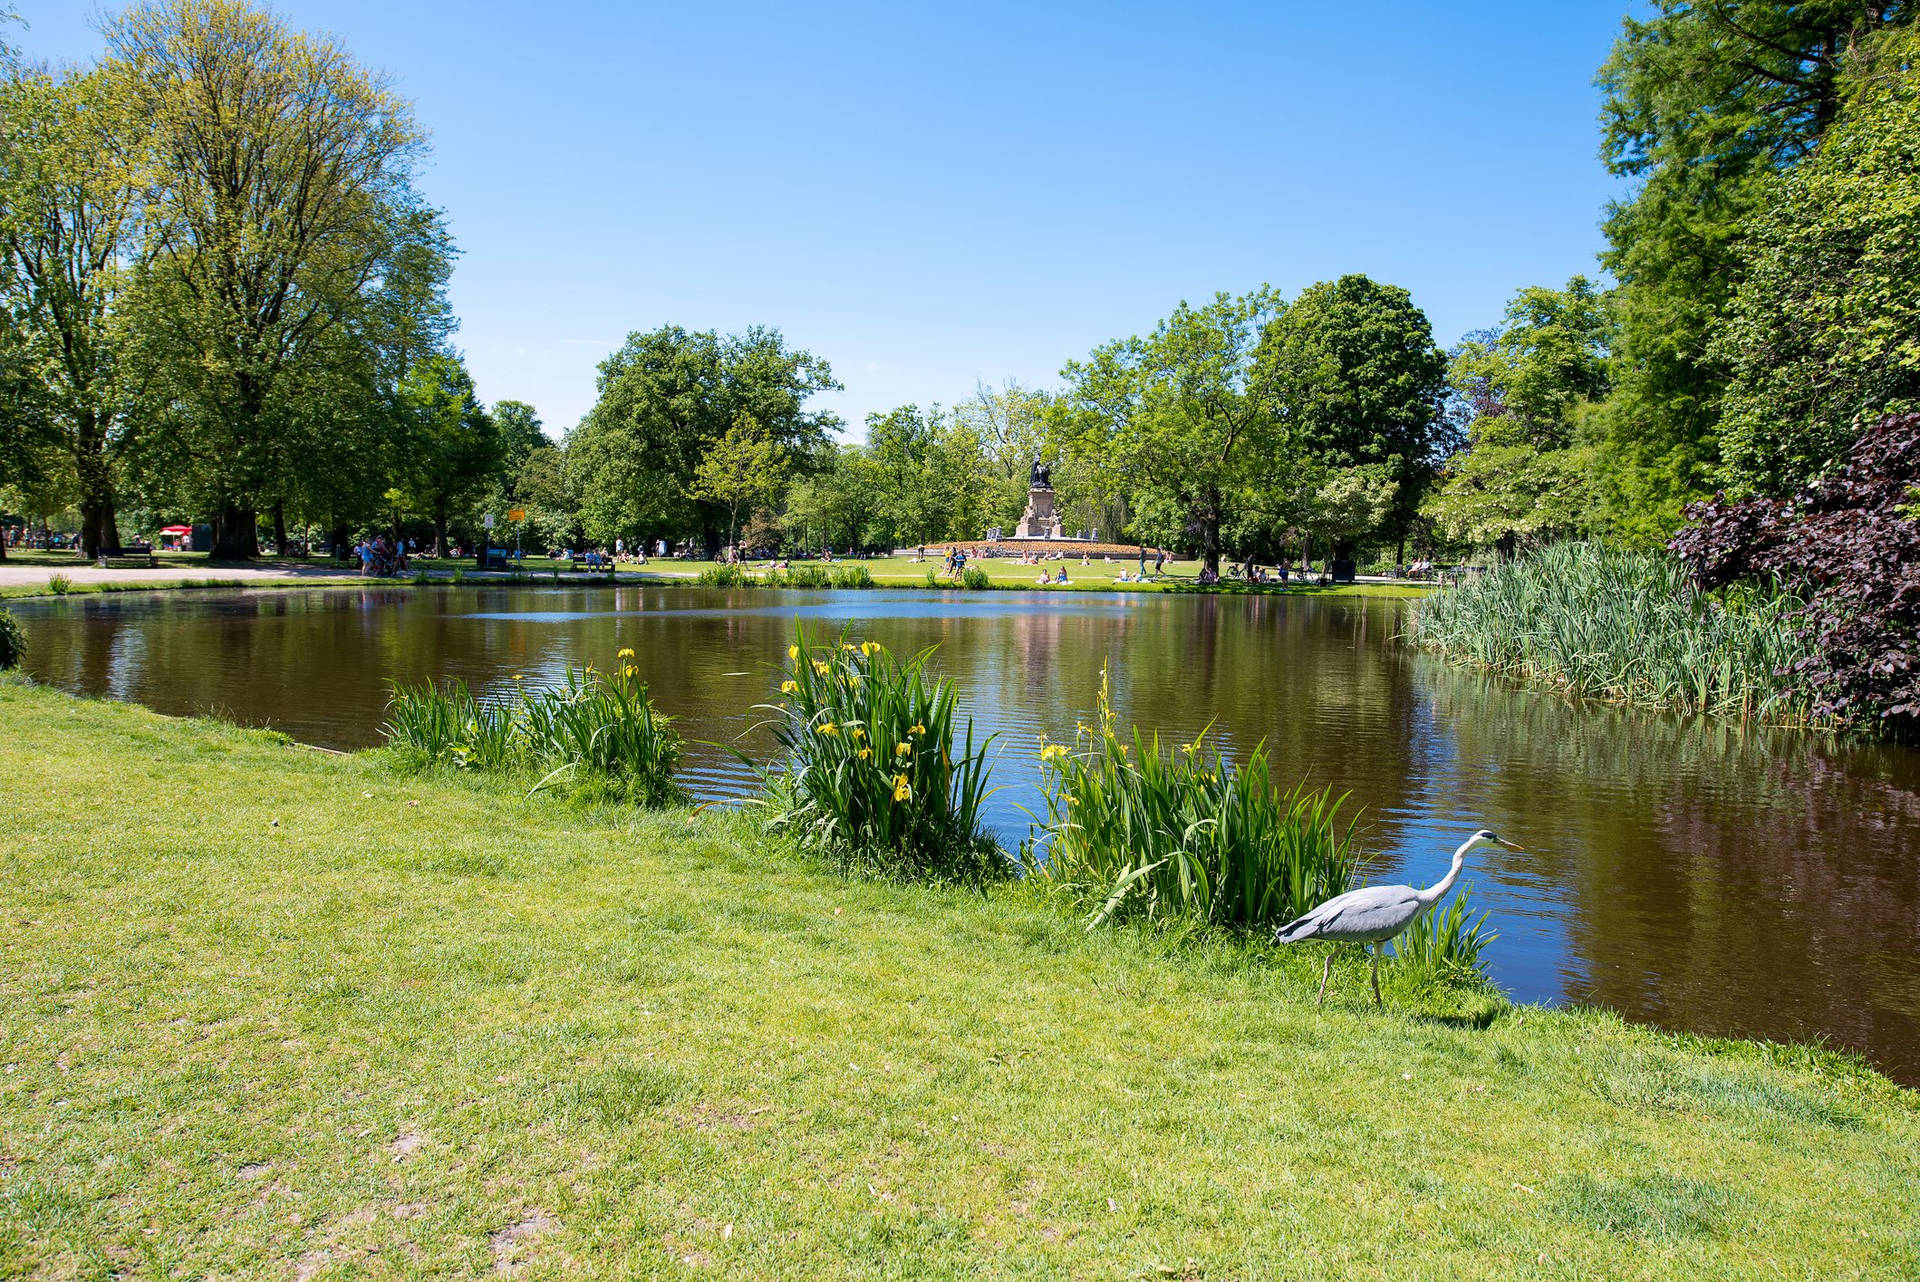 Amsterdam Vondel Park Pond Background